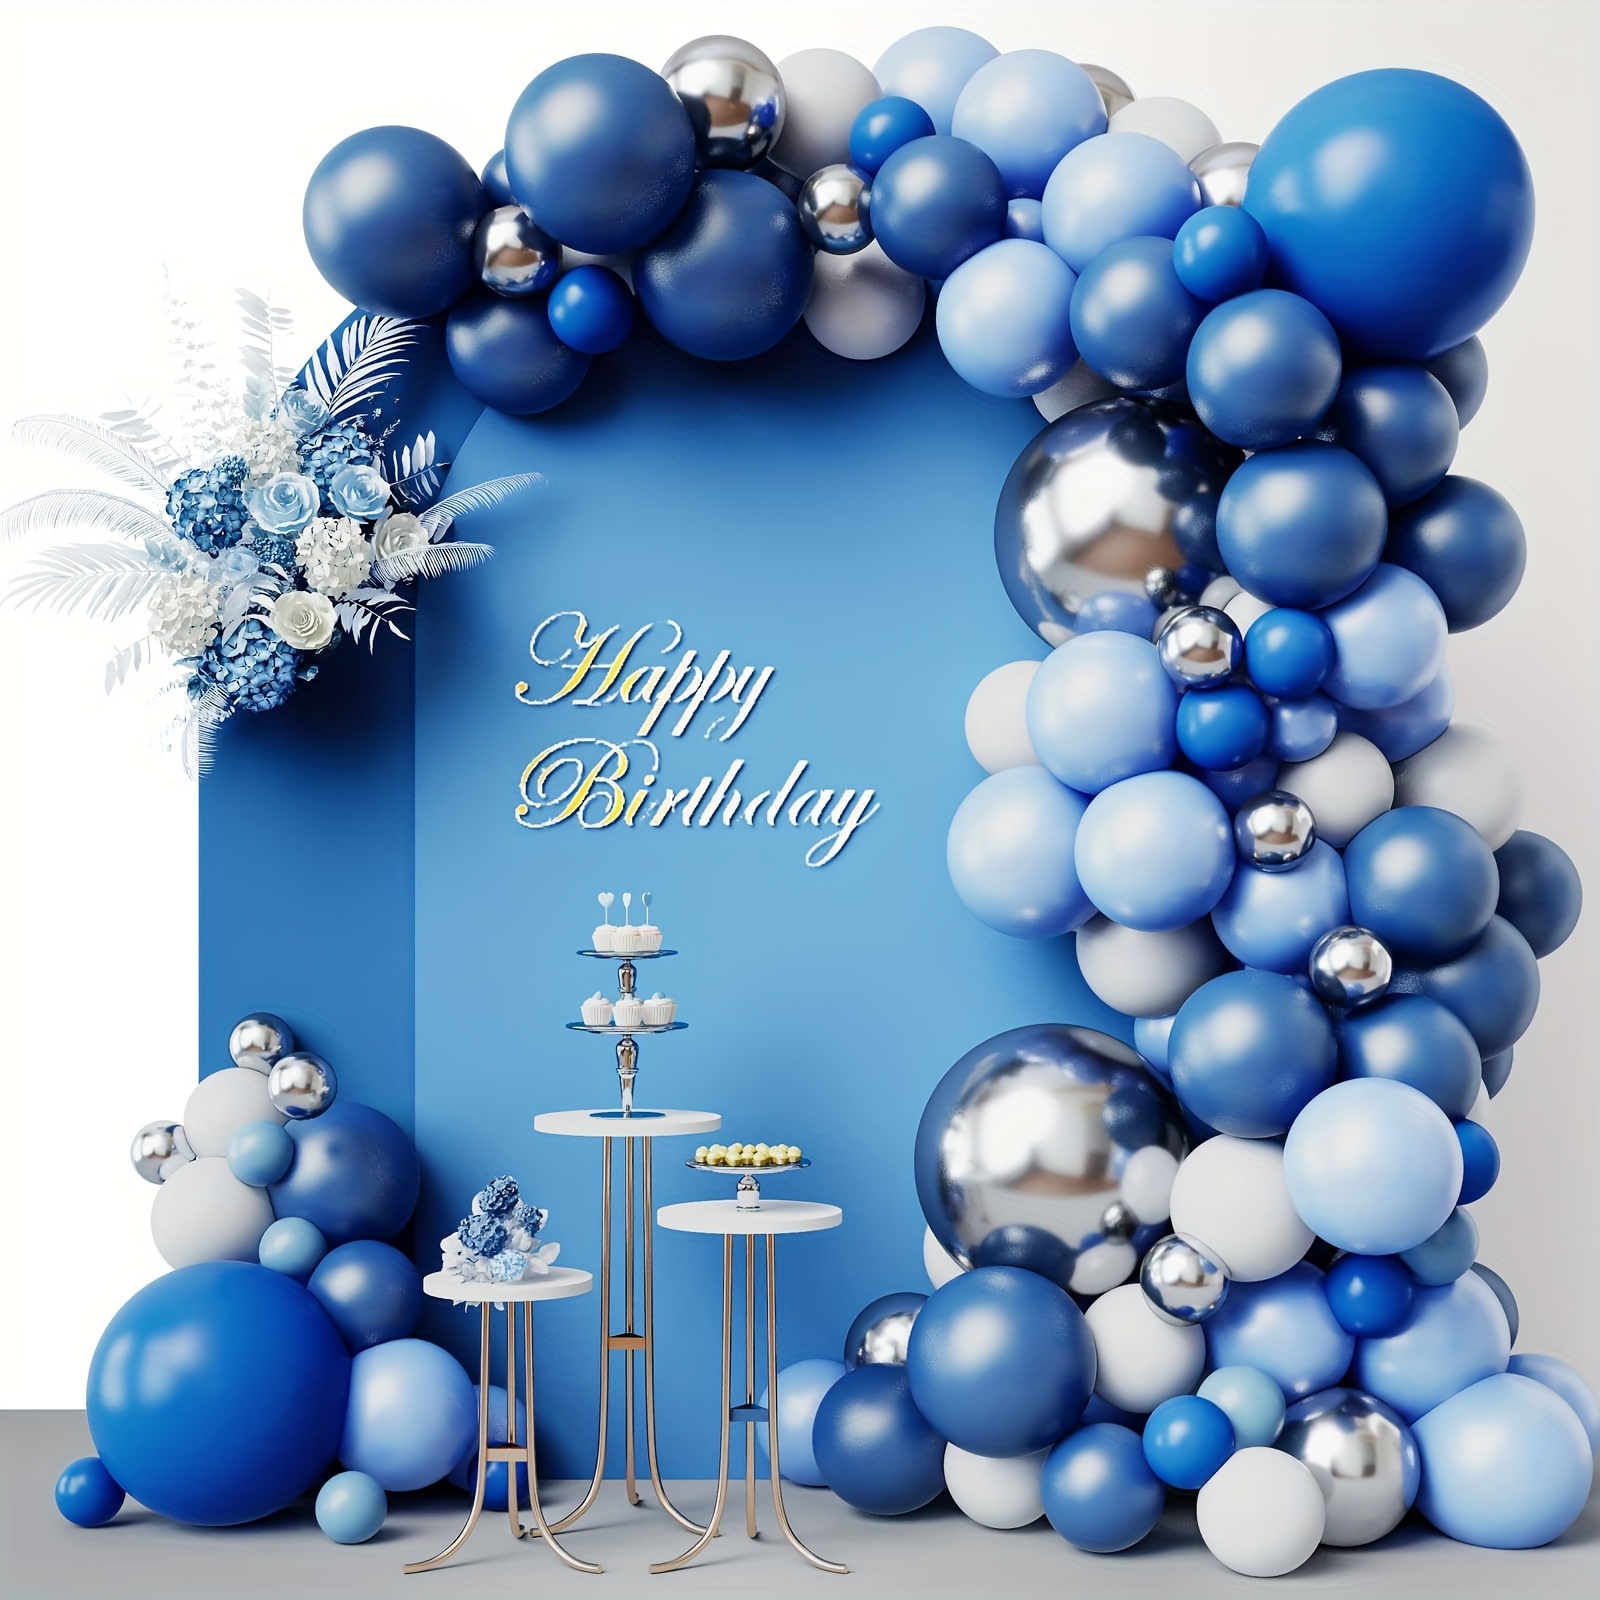 

Kit De Guirlande De Ballons Bleus, 102pcs 18/10/5 Pouces Ballons Métalliques Blancs Bleu Royal Et Bleu Marine Pour Décorations De Fête D'anniversaire De Mariage De Remise Des Diplômes